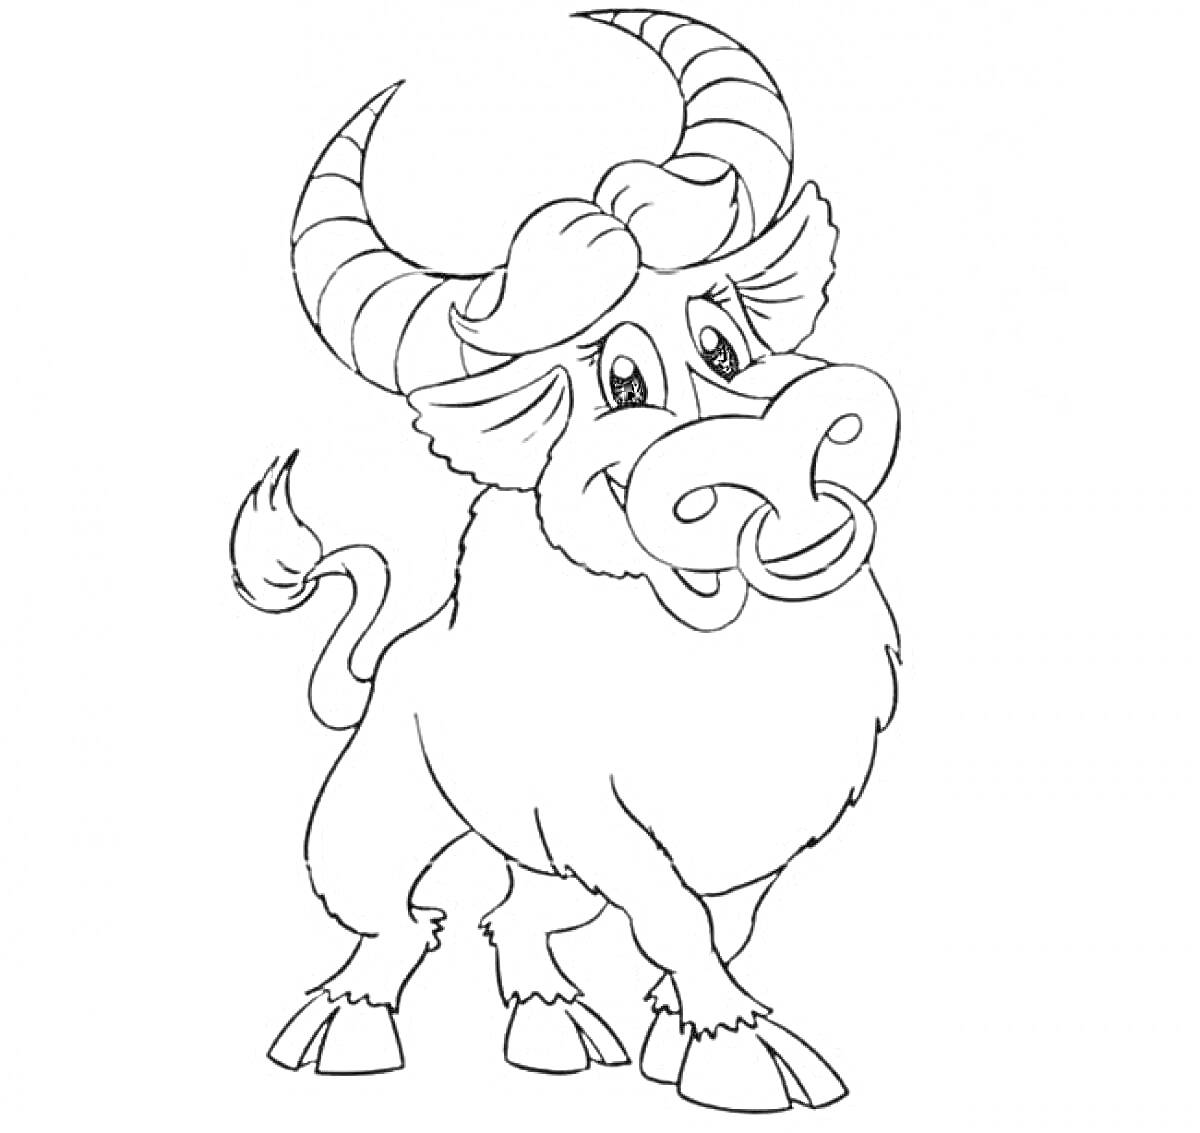 Раскраска Веселый бык с кольцом в носу и большими рогами